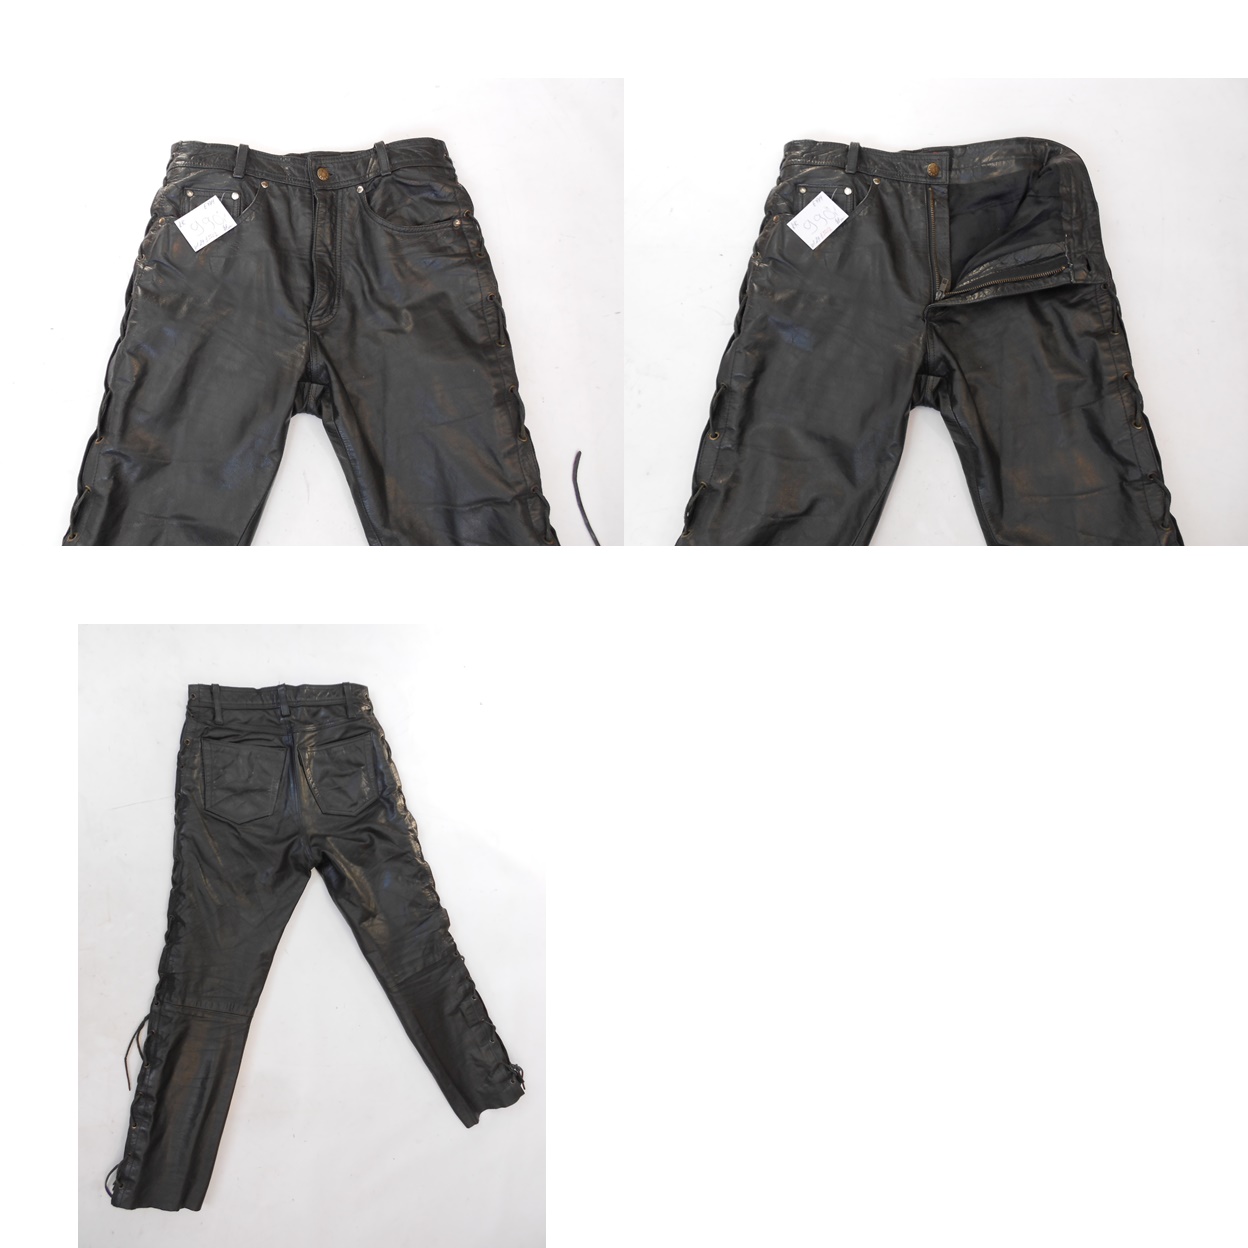 Kožené šněrovací kalhoty vel. 29 - pas: 76 cm - Náhradní díly a příslušenství pro motocykly